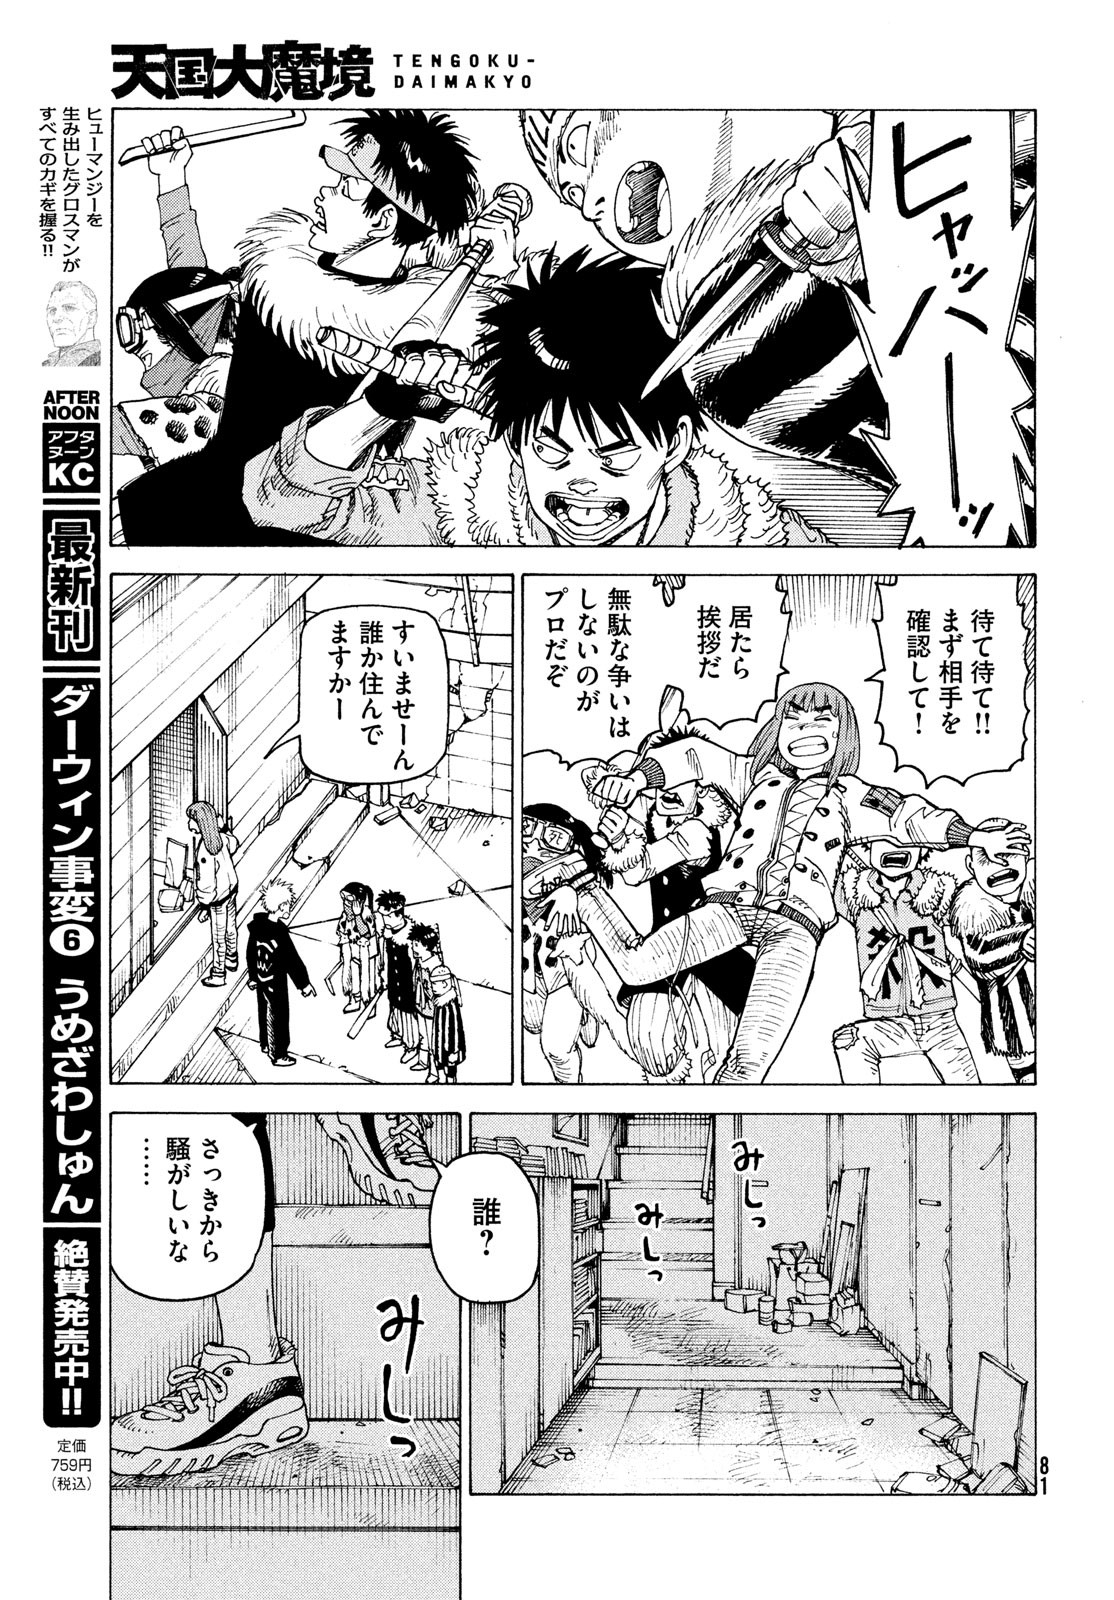 Tengoku Daimakyou - Chapter 59 - Page 11